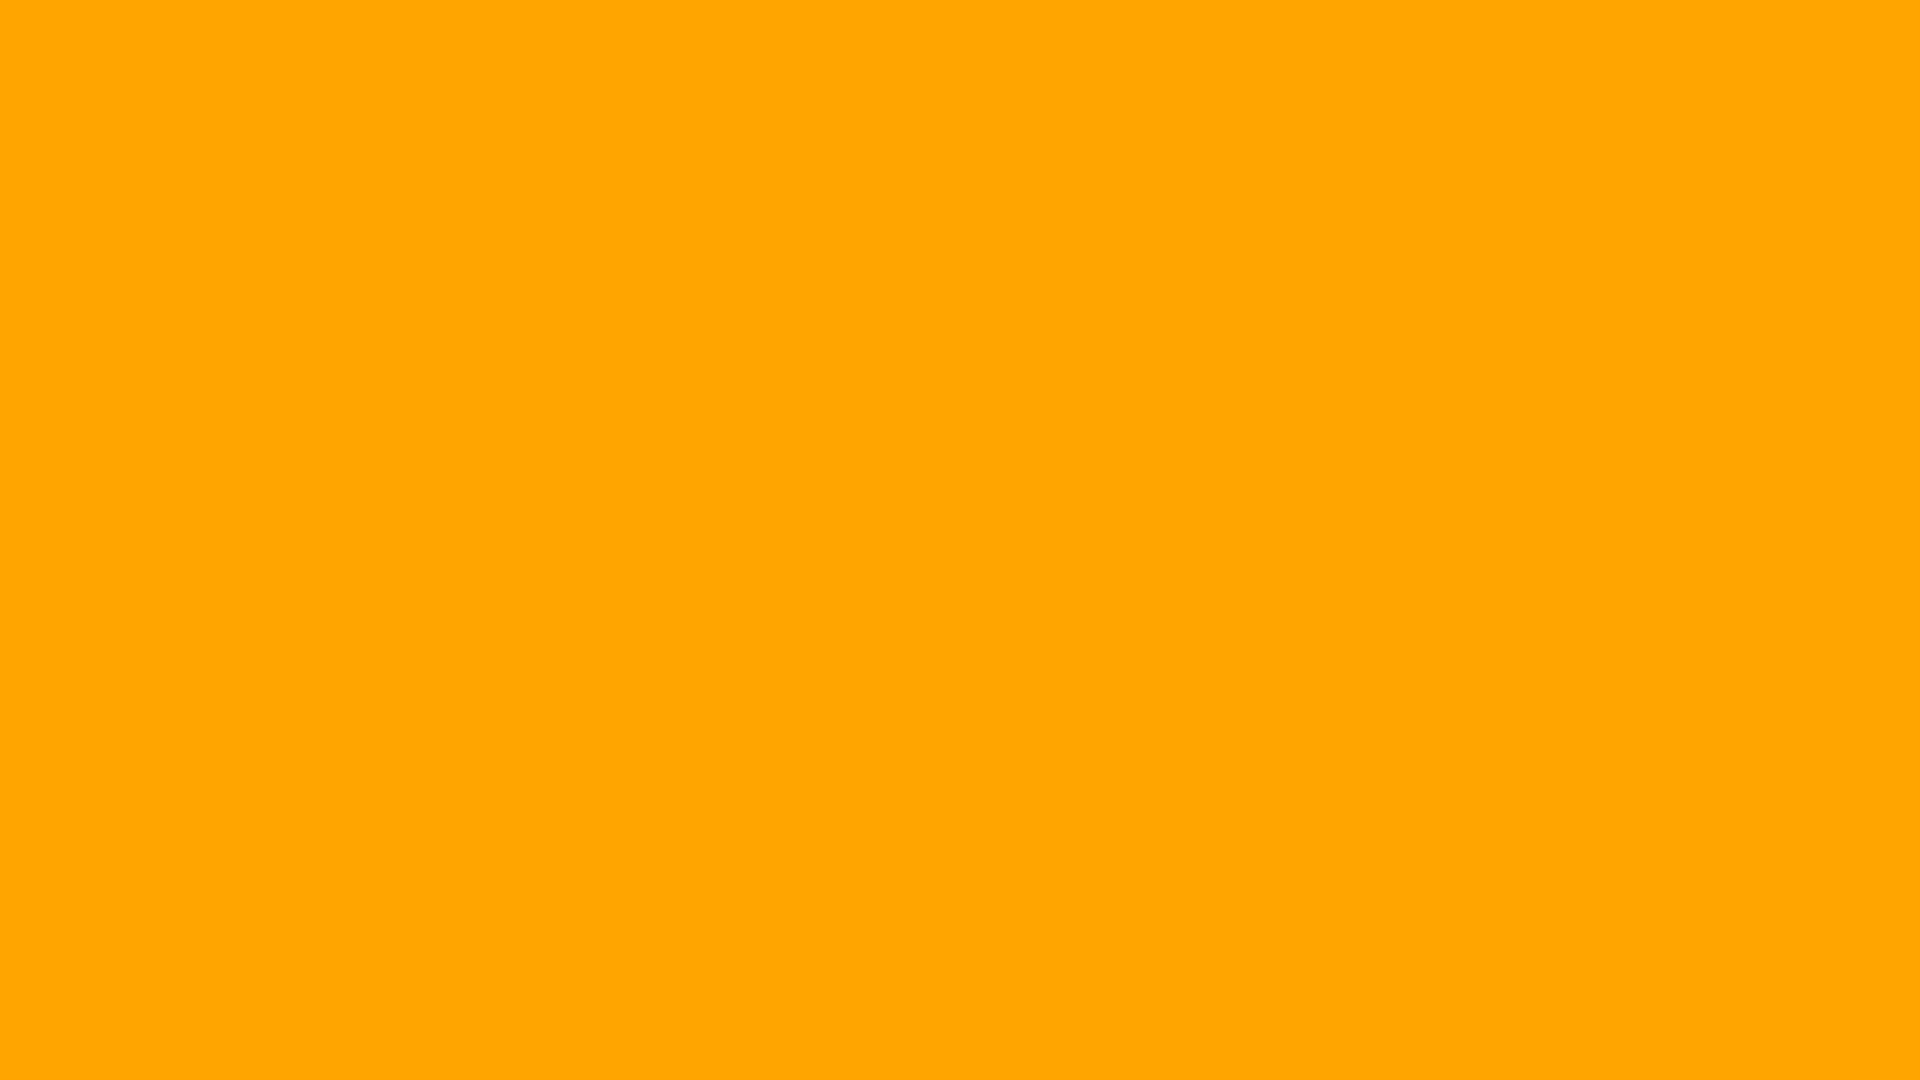 Mã màu cam HTML là một trong những màu sắc đẹp nhất và phổ biến nhất trong thiết kế web. Hình ảnh liên quan đến mã màu cam HTML sẽ giúp bạn hiểu rõ hơn về cách sử dụng màu sắc này để tạo ra những thiết kế đẹp và chuyên nghiệp.